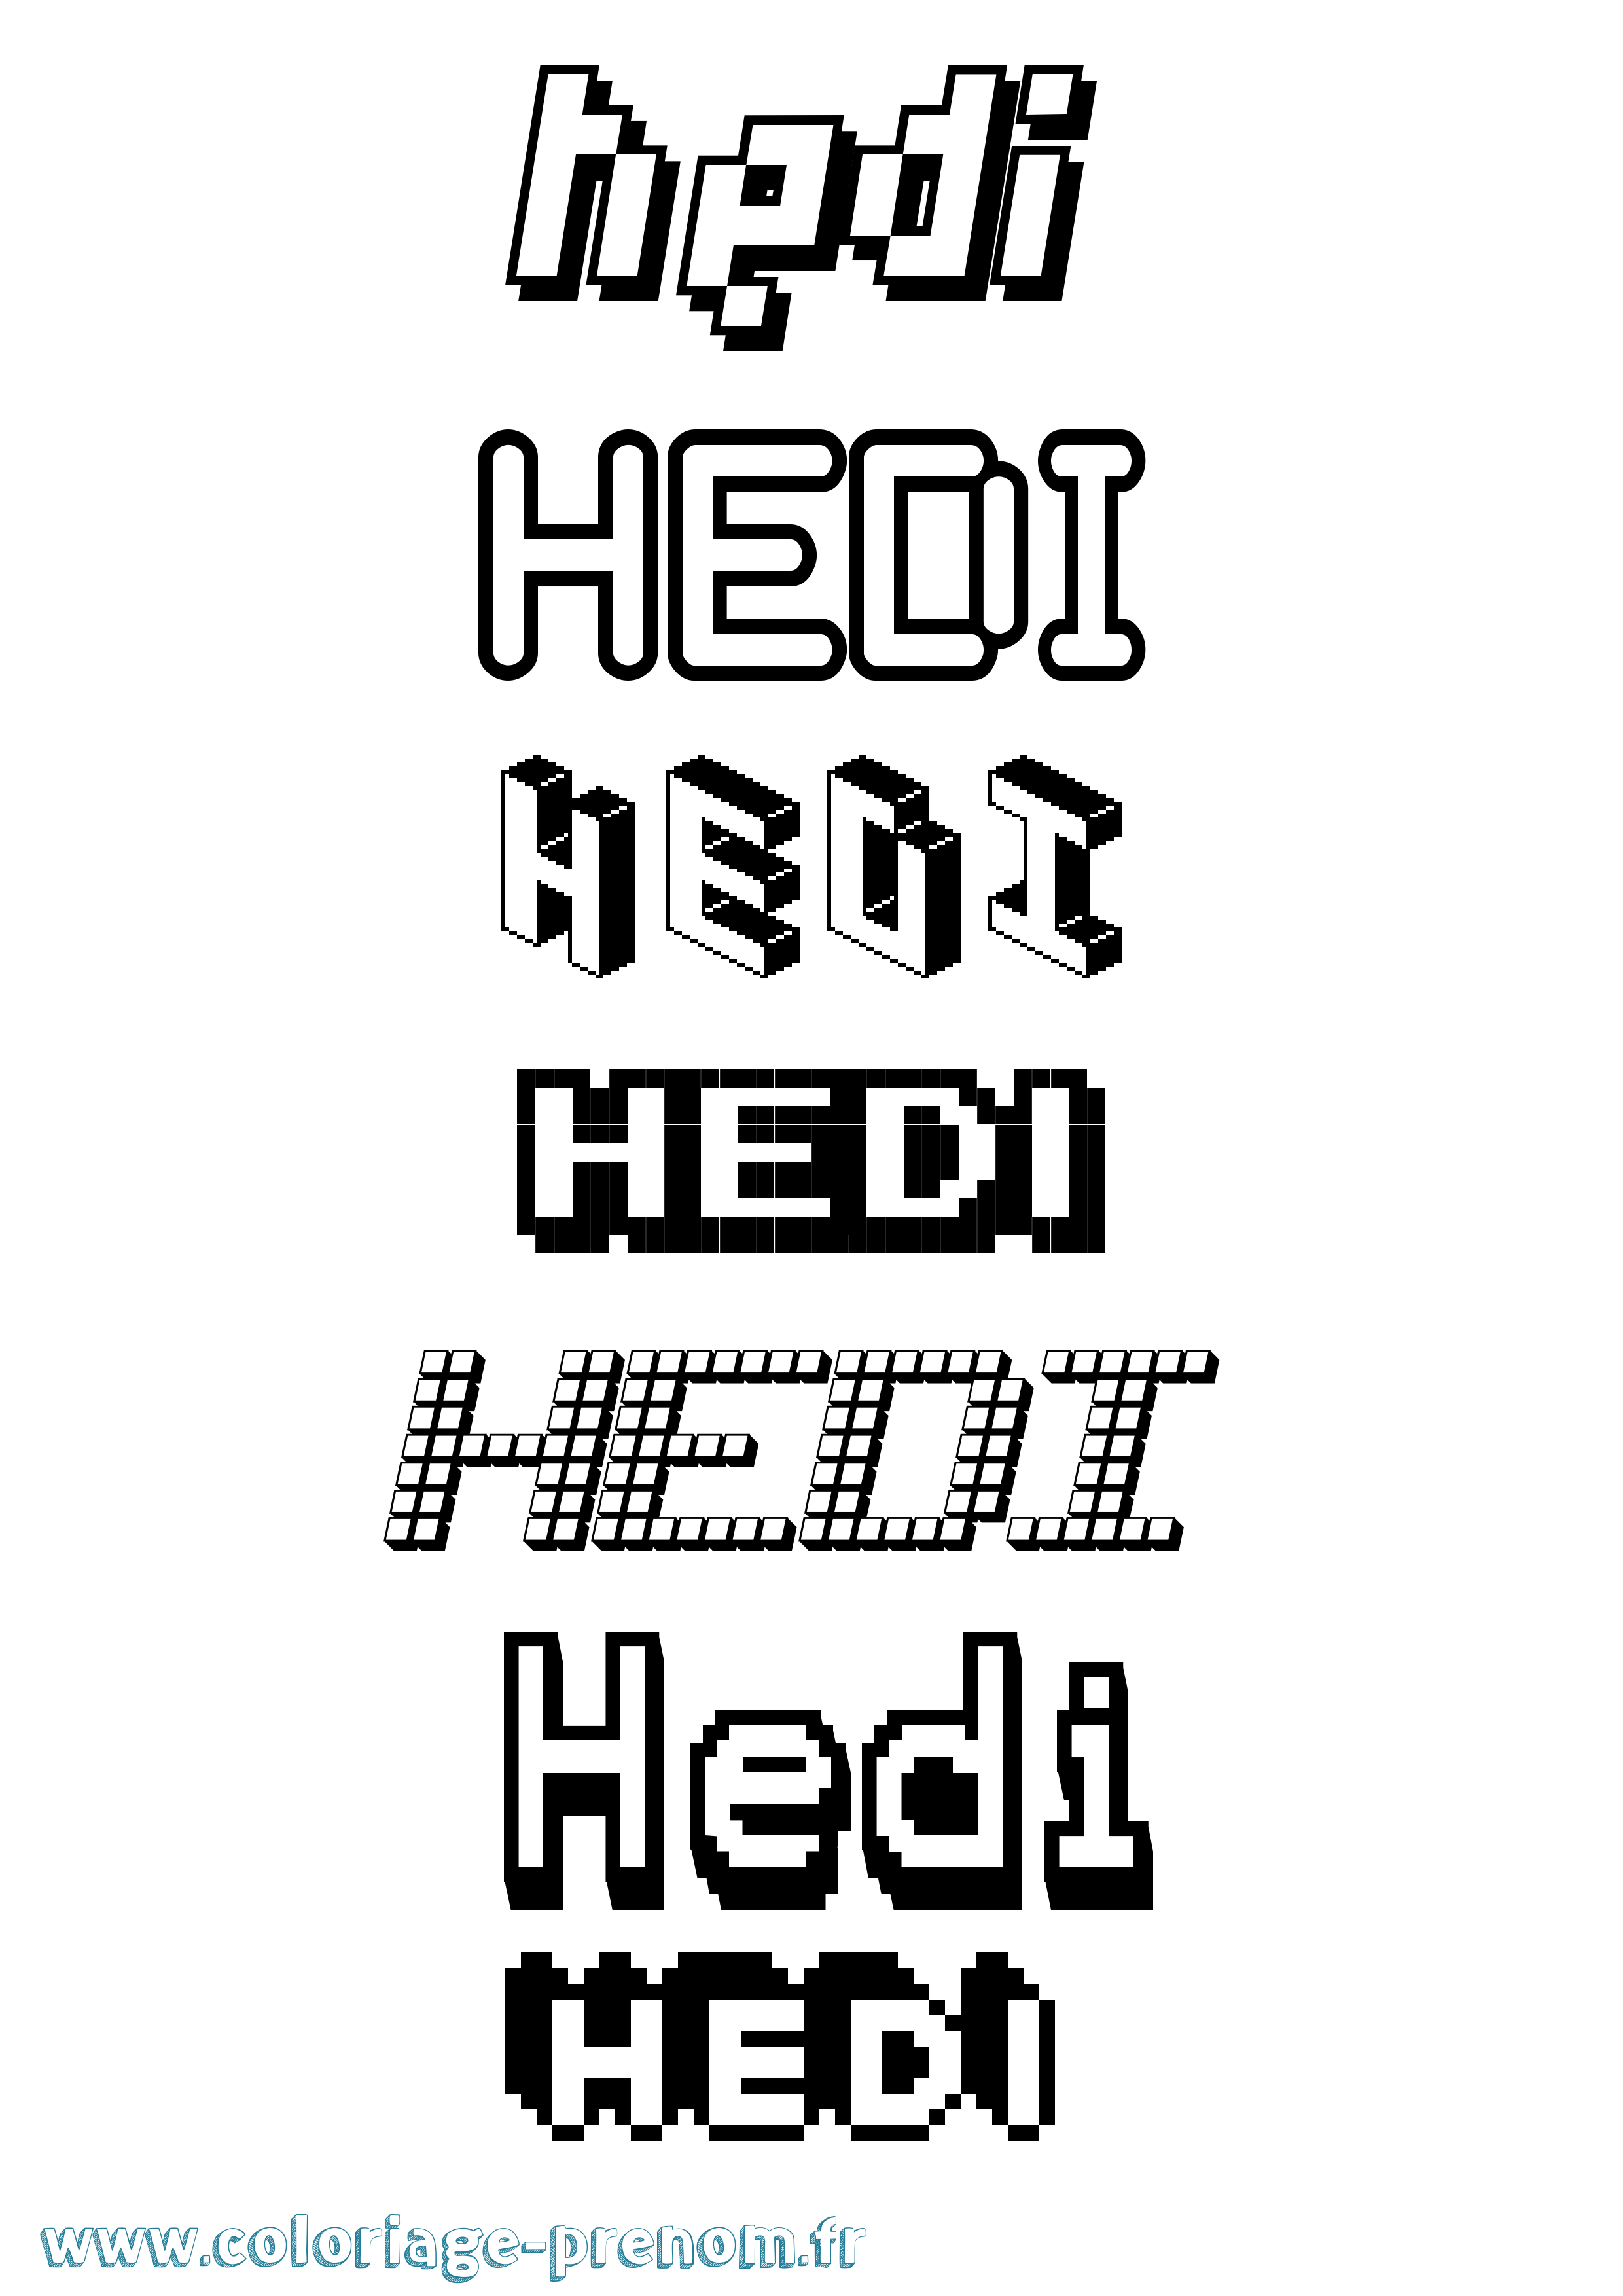 Coloriage prénom Hedi Pixel